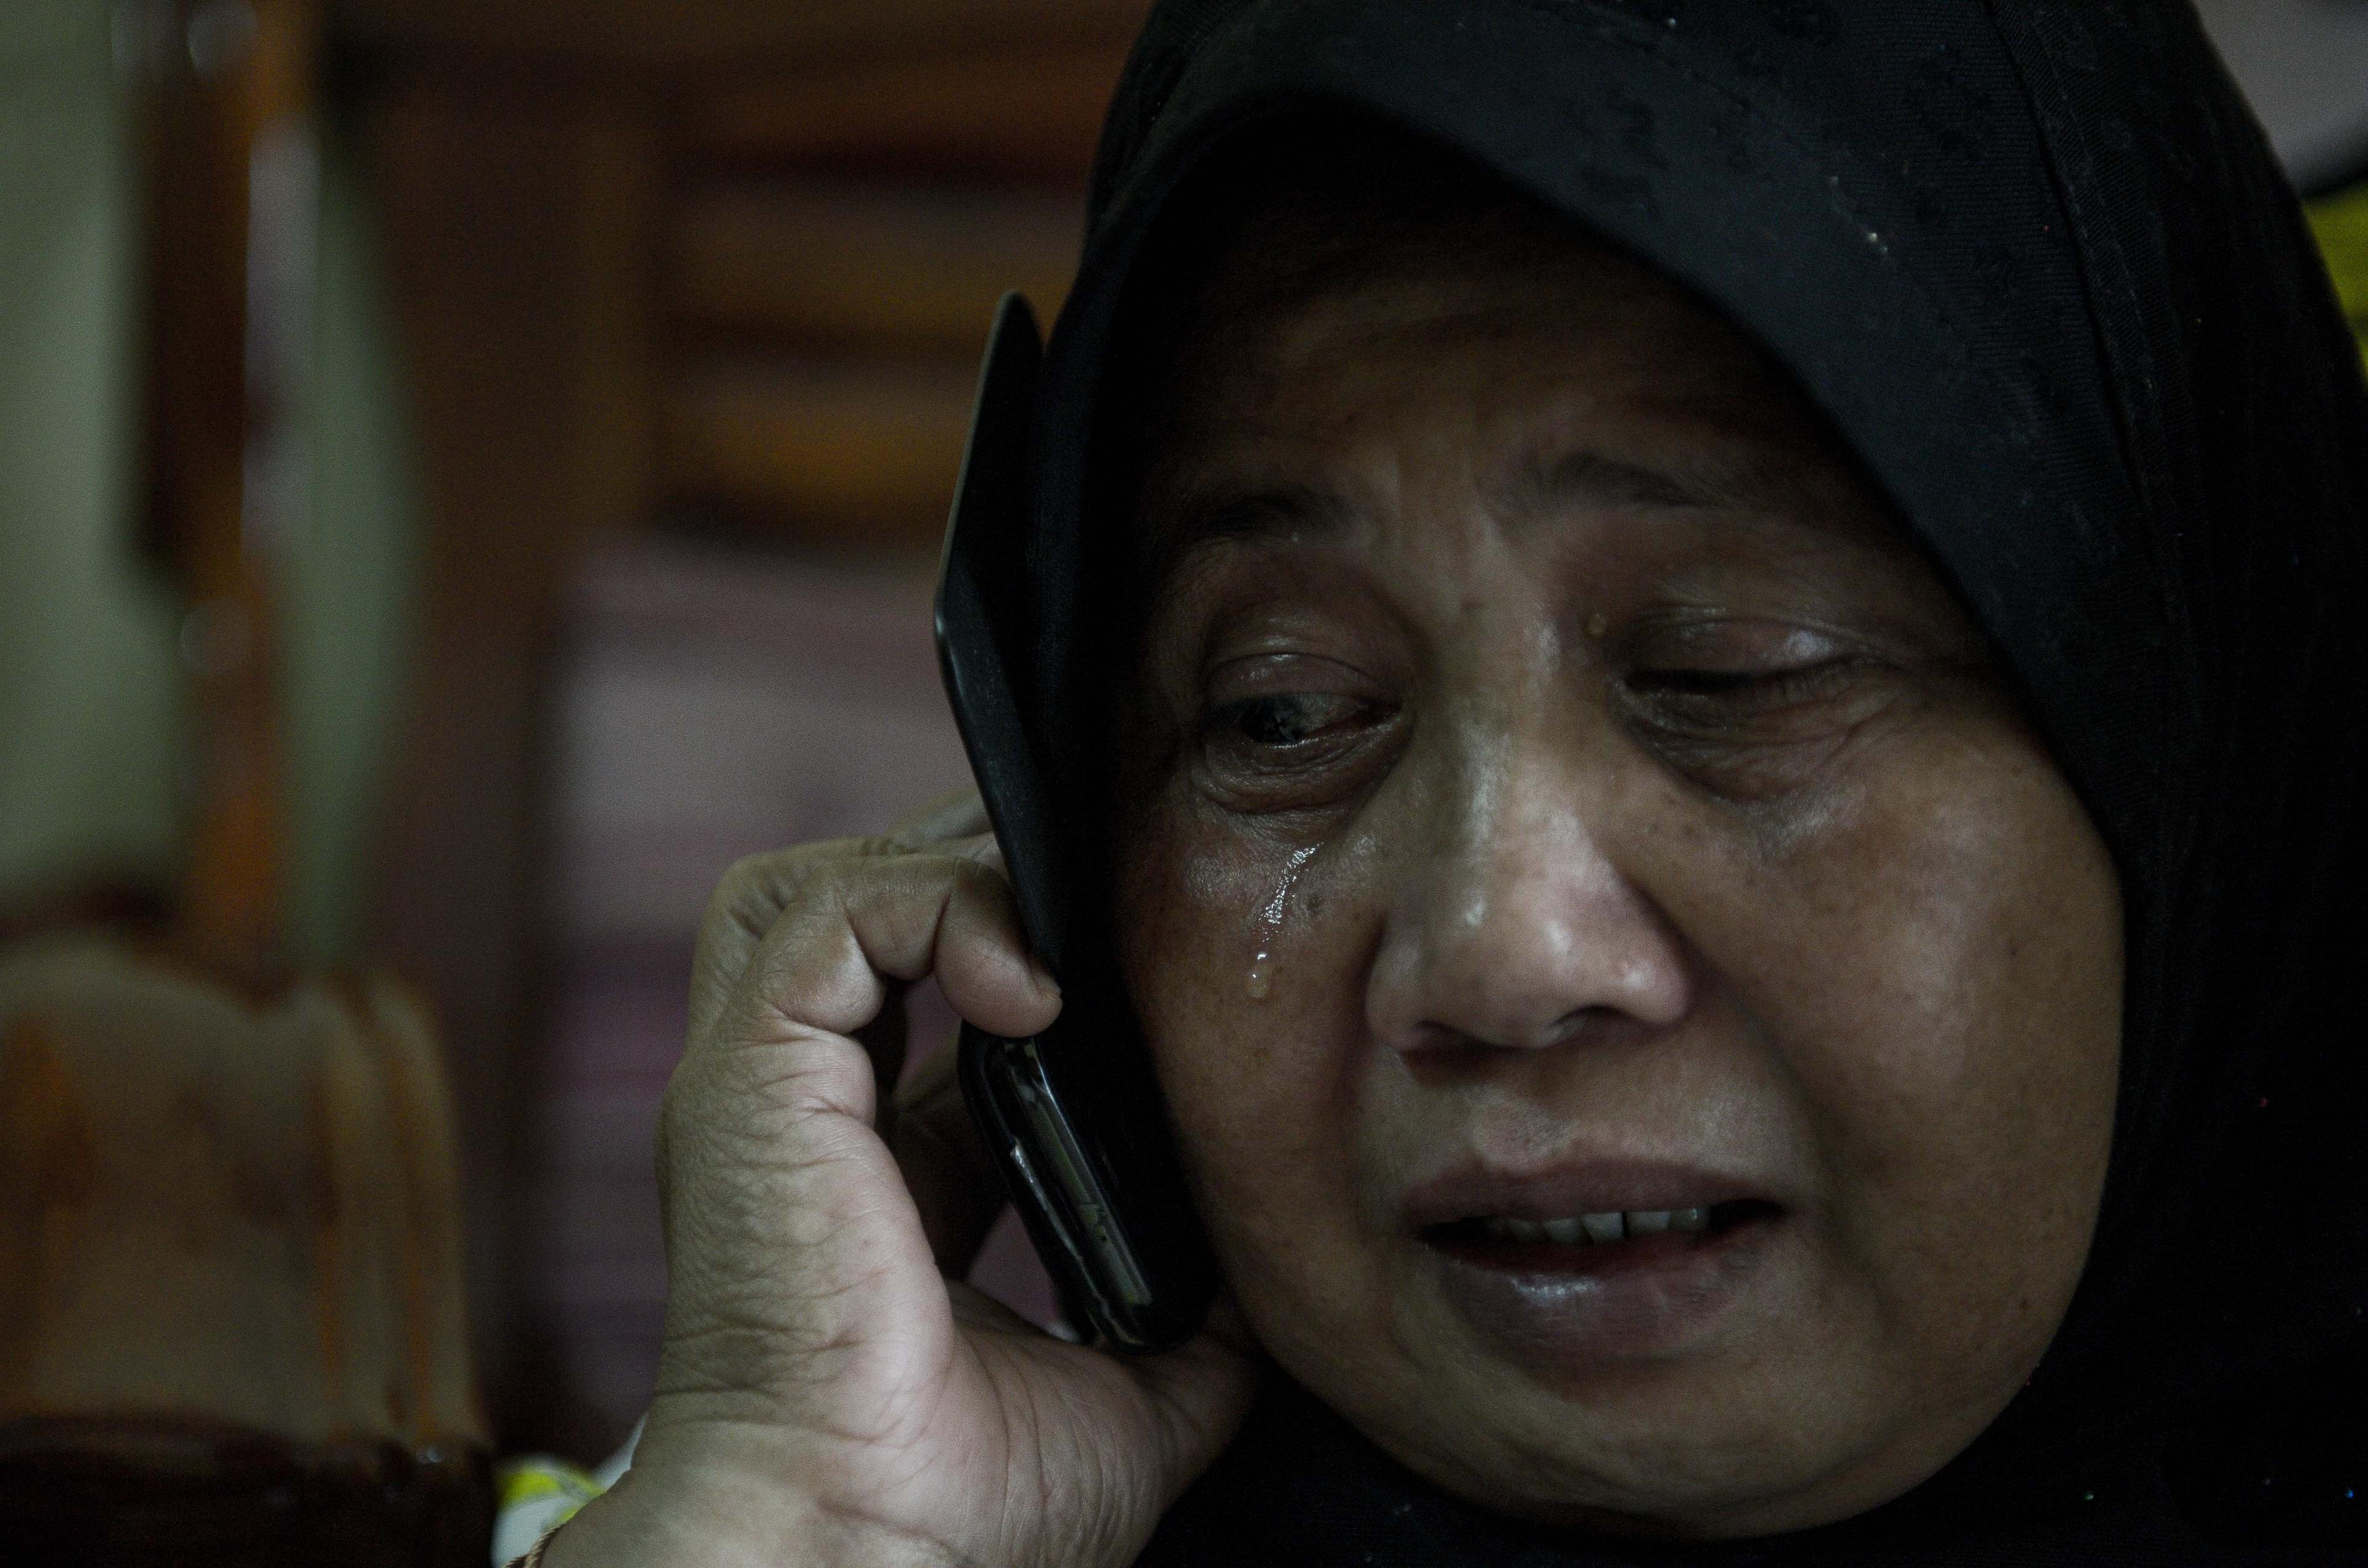 Personer som är oroliga för att anhöriga dras in i extremism ska få ett nödnummer att ringa. (Foto: Mohd Rasfan /AFP/Getty Images)